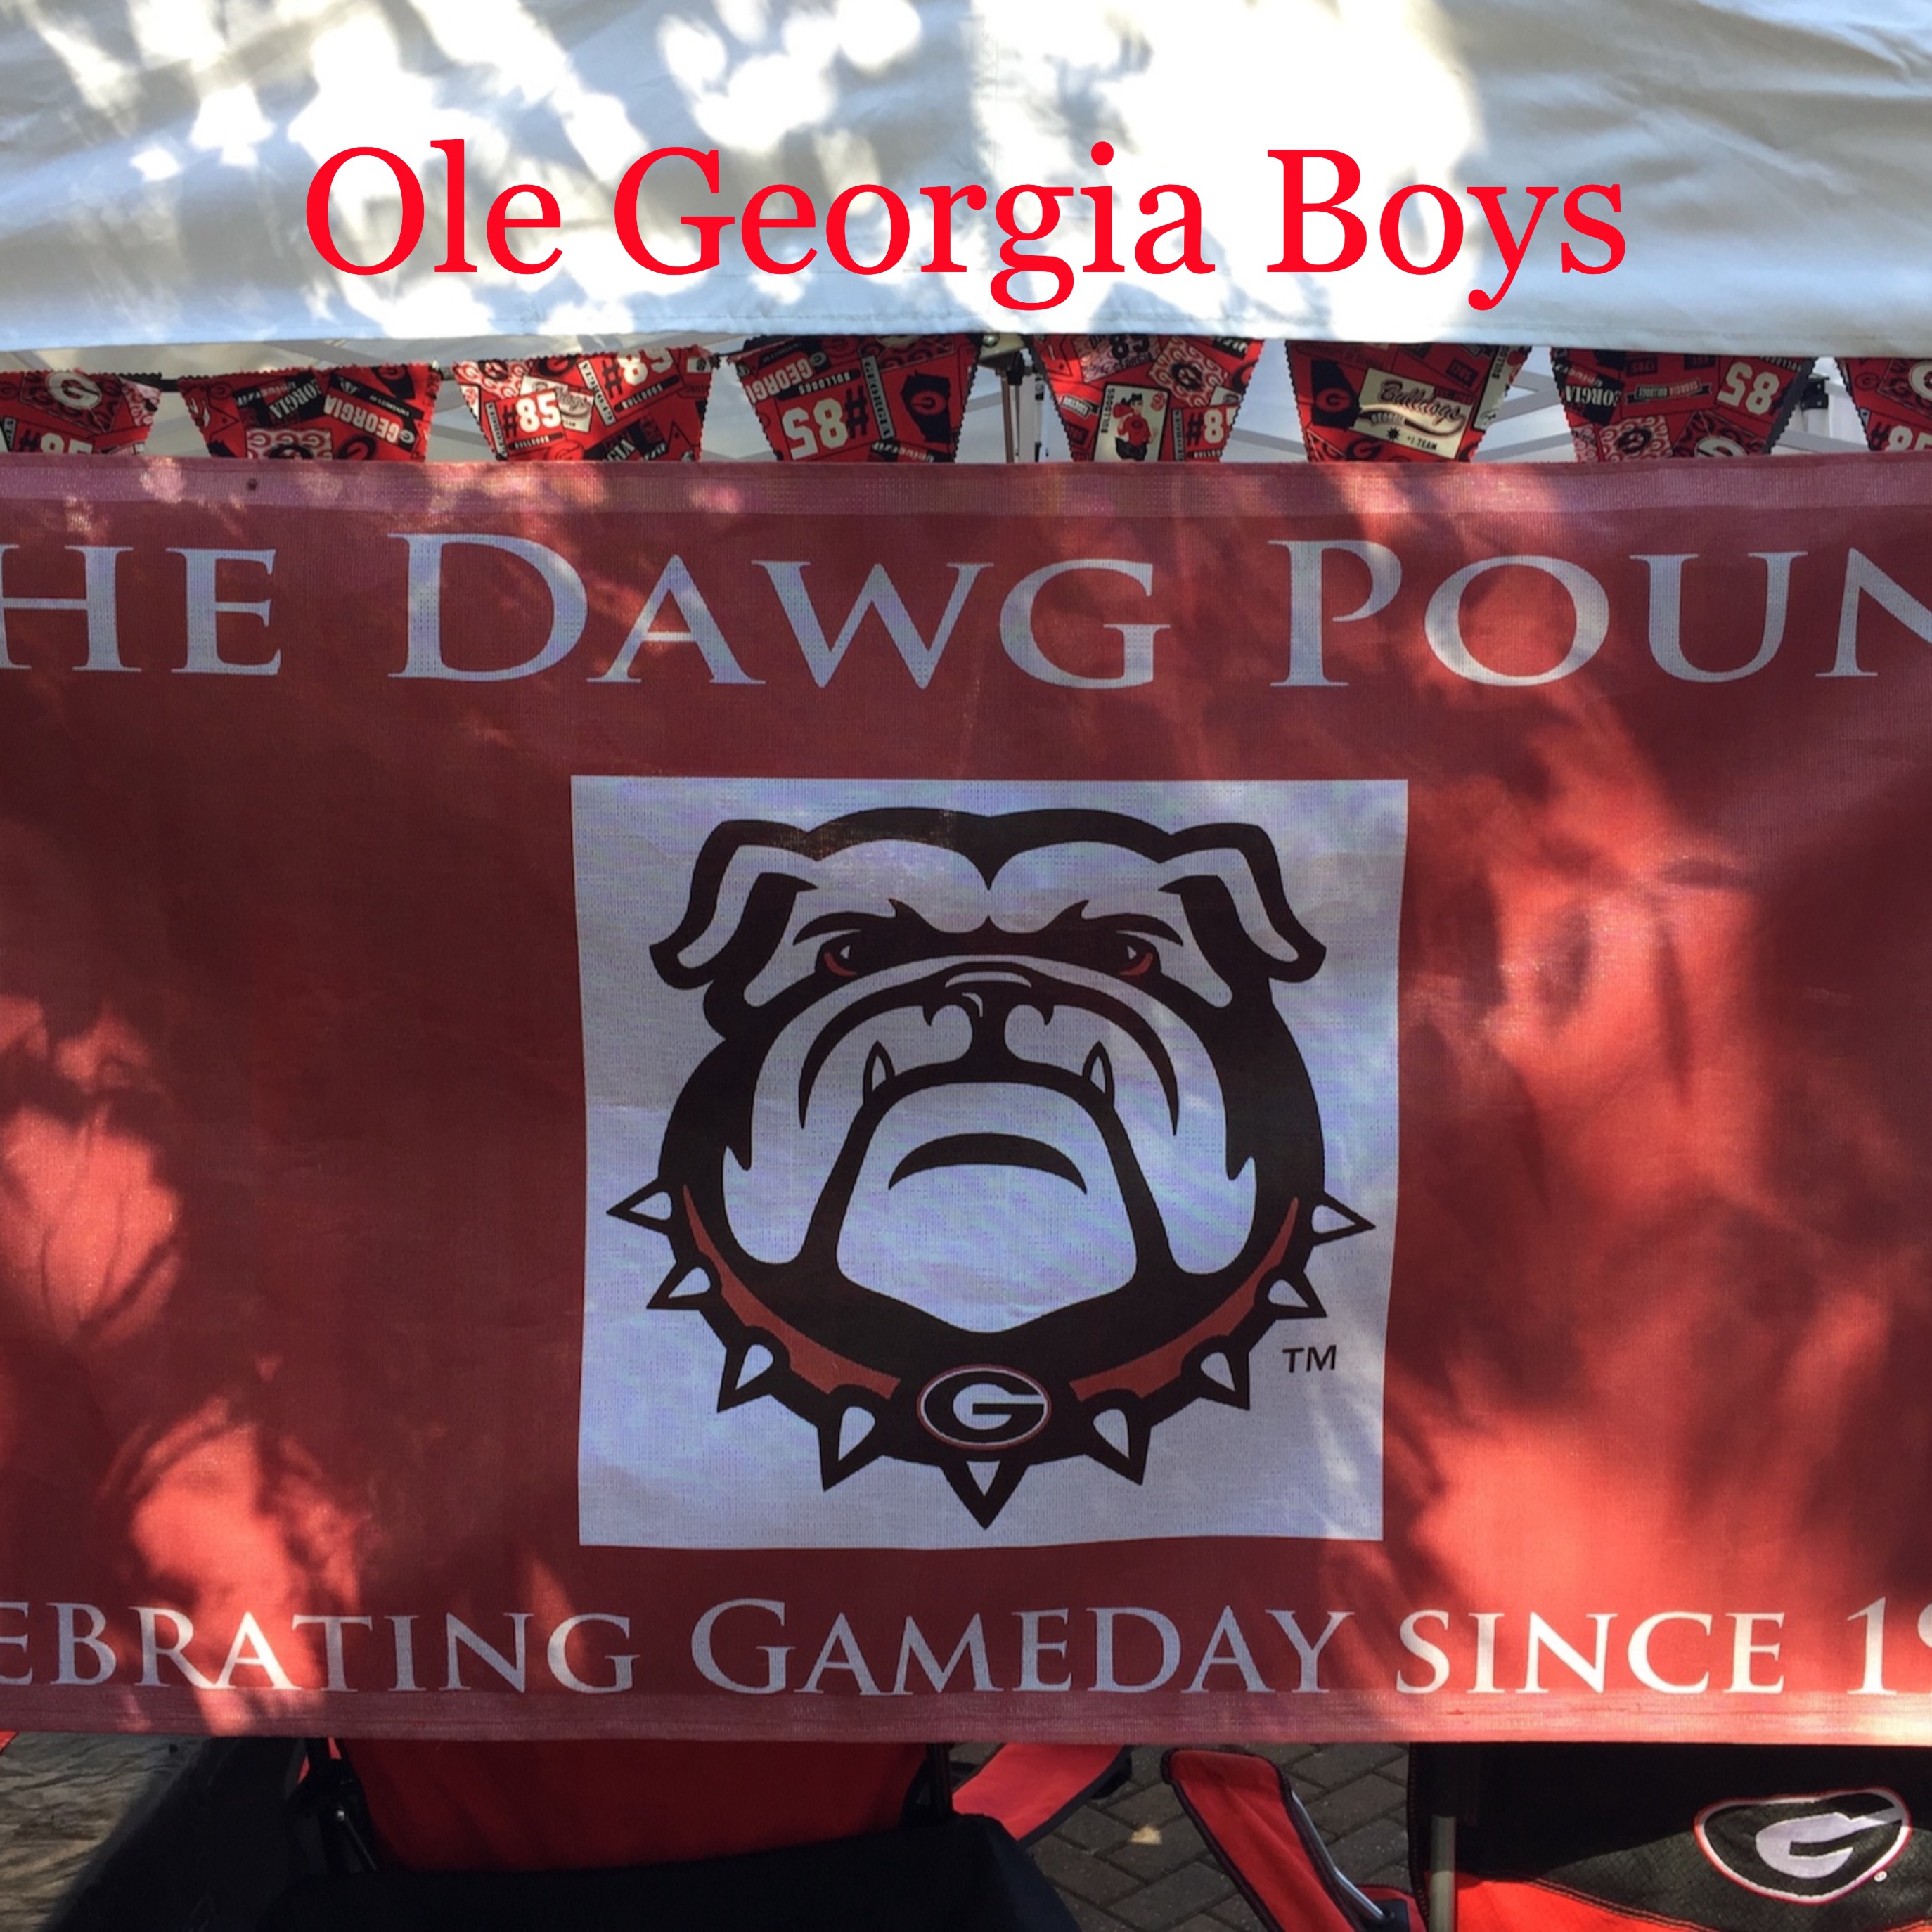 Ole Georgia Boys